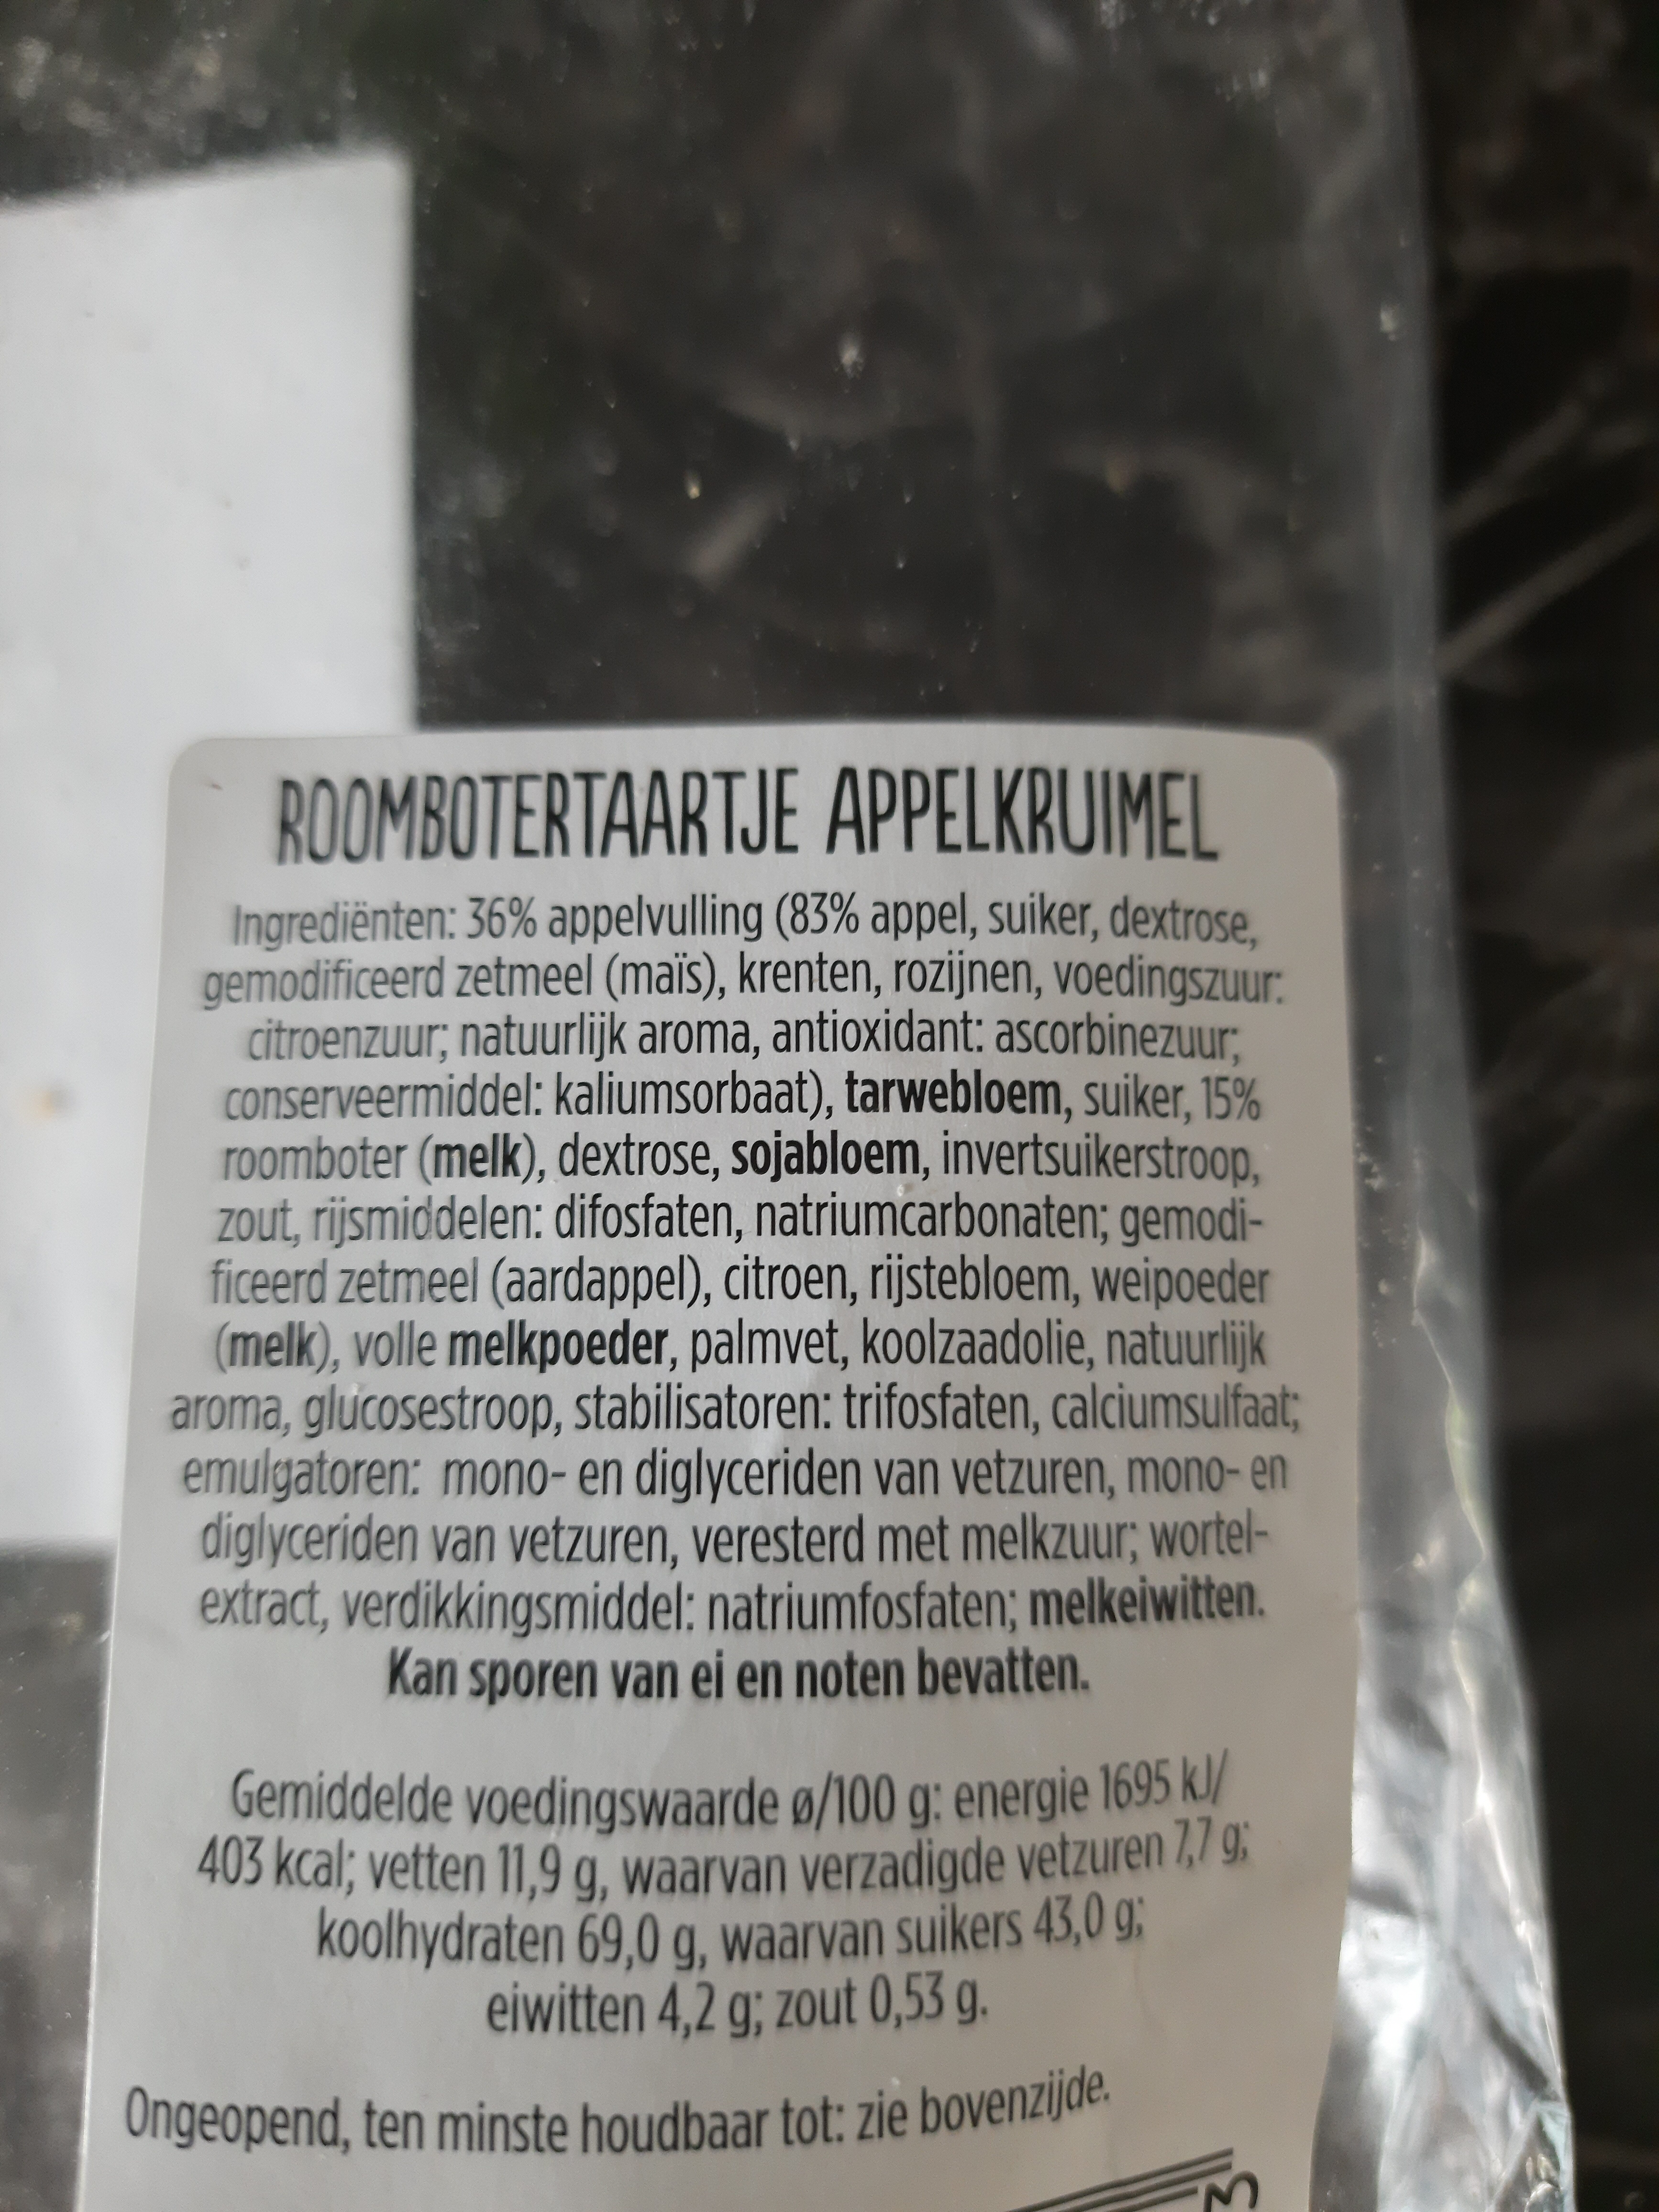 Roombotertaartje appelkruimel - Product - nl